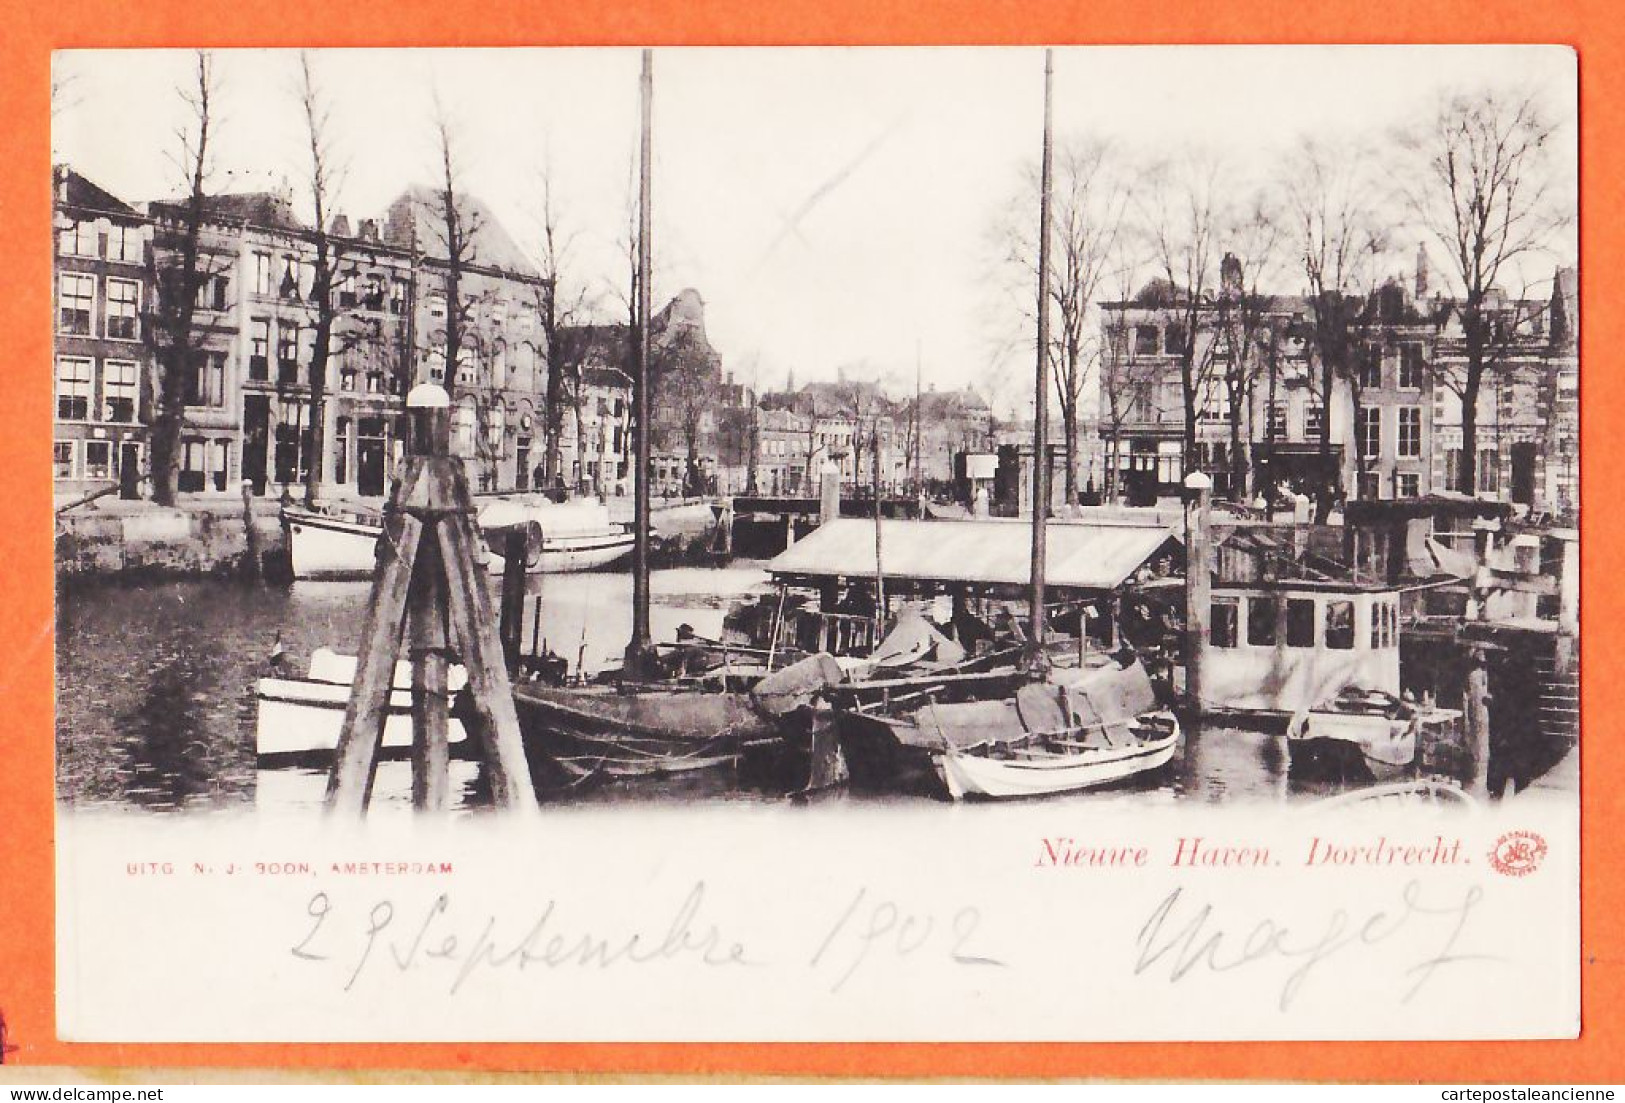 05071 ● ● Rare DORDRECHT Zuid-Holland Nieuwe Haven Nouveau Port 1900s à Marie POUCHET Rouen  N.J BOON Amsterdam - Dordrecht